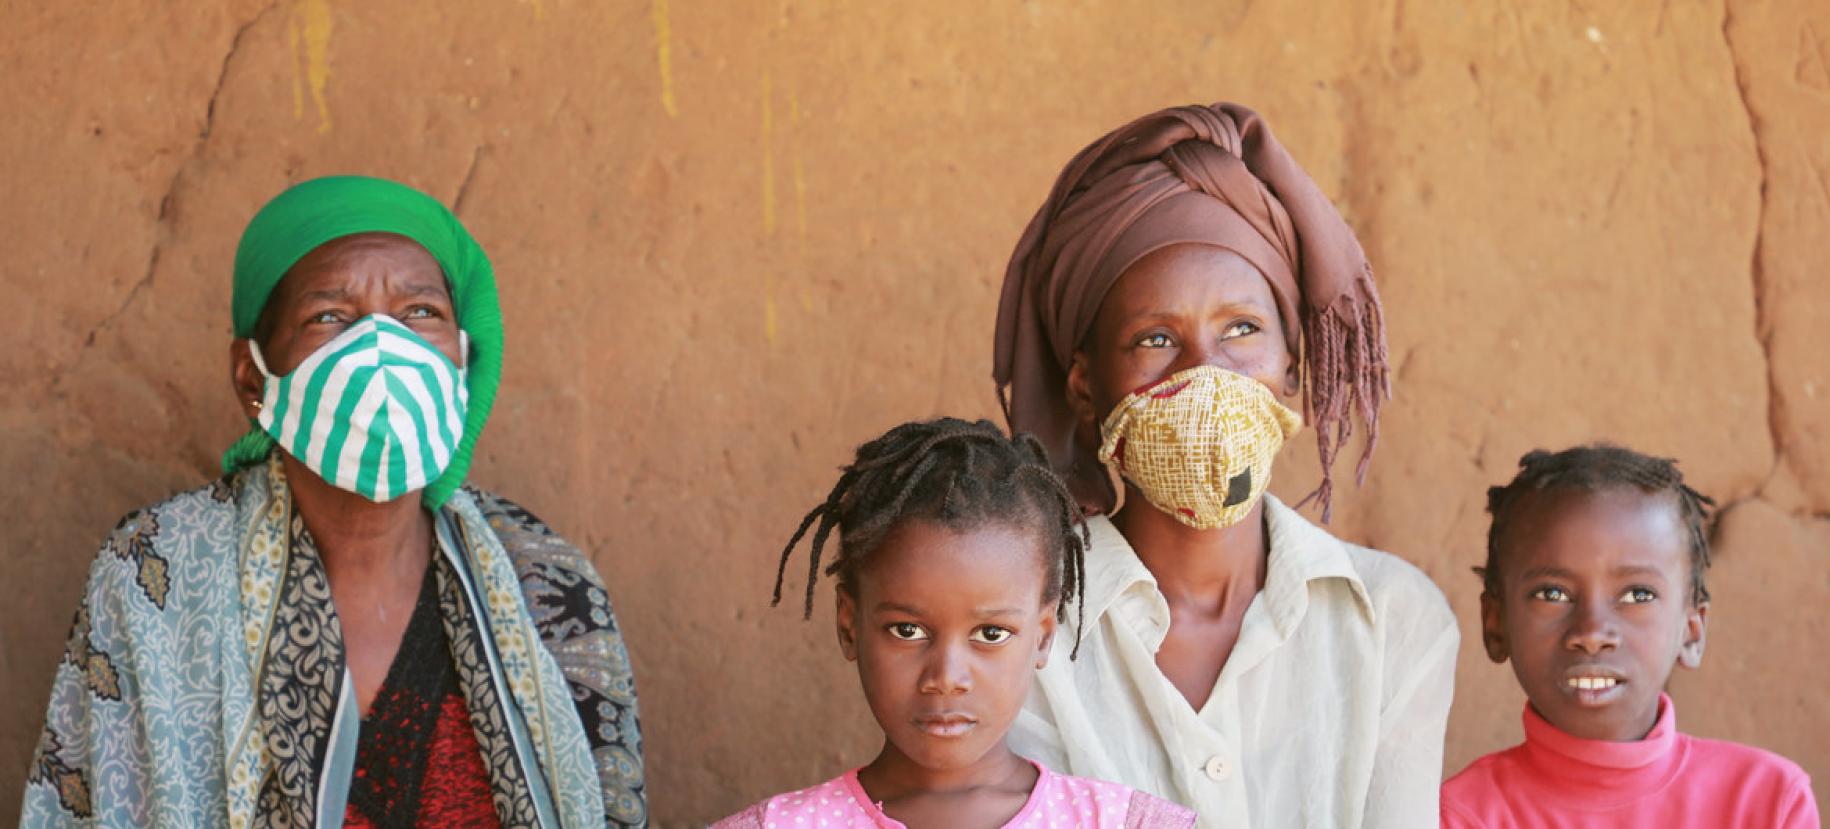 Deux femmes et deux enfants se tiennent face à la caméra. Les deux femmes portent un turban et un masque de protection respiratoire en tissu et regardent au loin. La fillette au centre de l'image regarde fixement l'appareil photo.